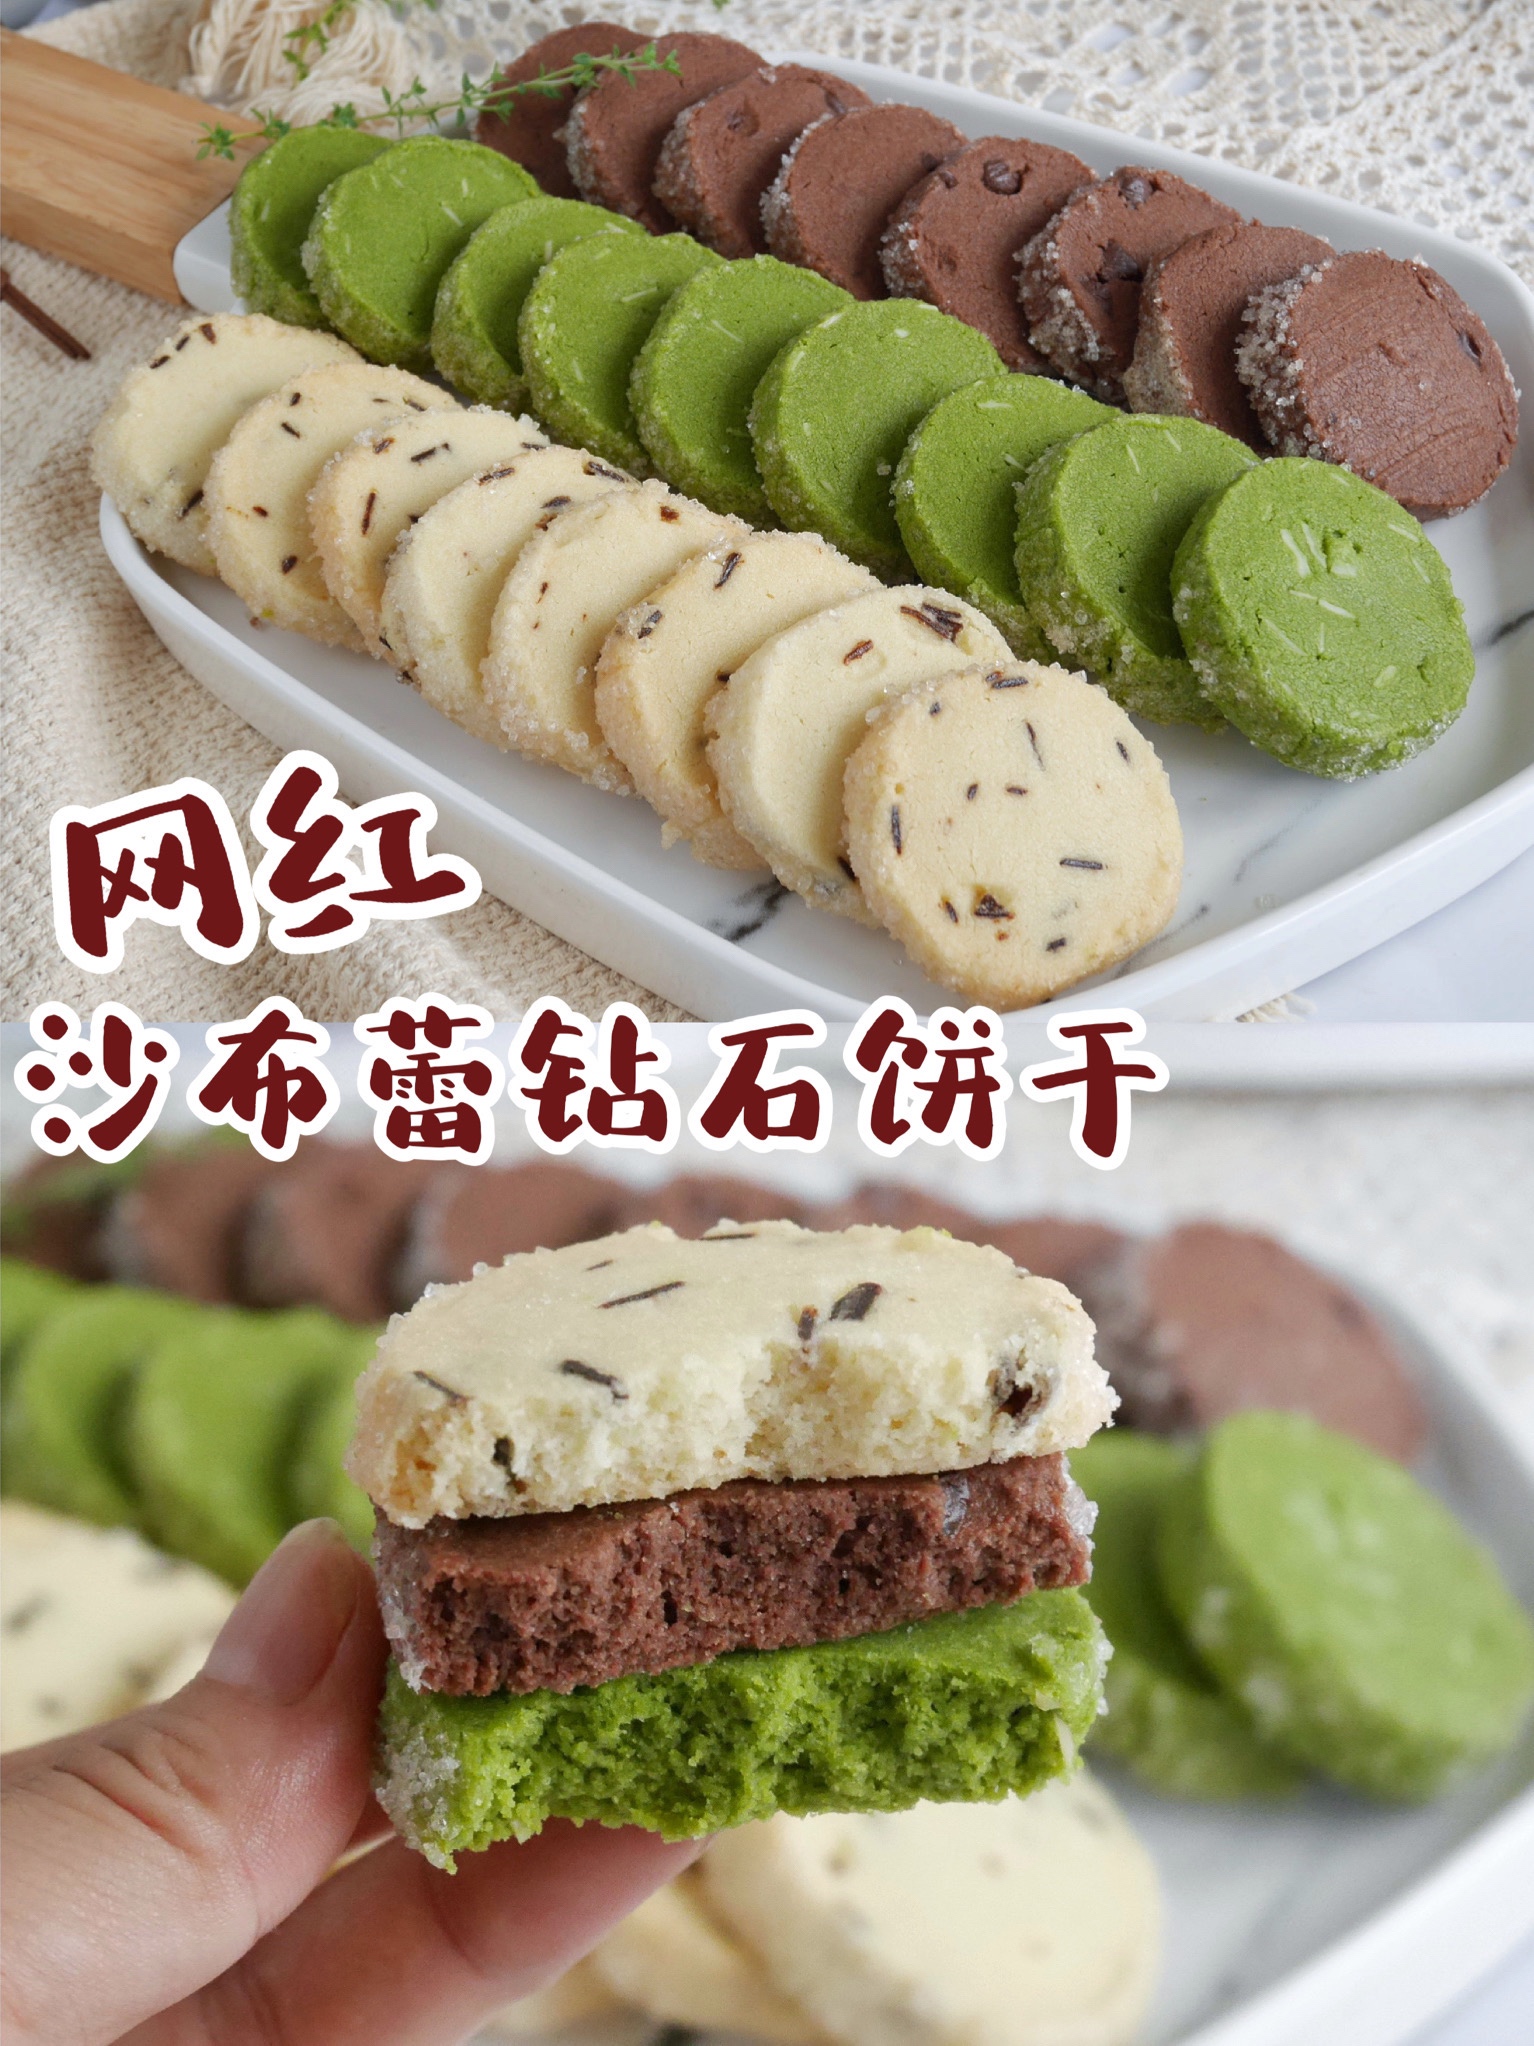 网红甜品❗️❗️沙布蕾钻石饼干的做法